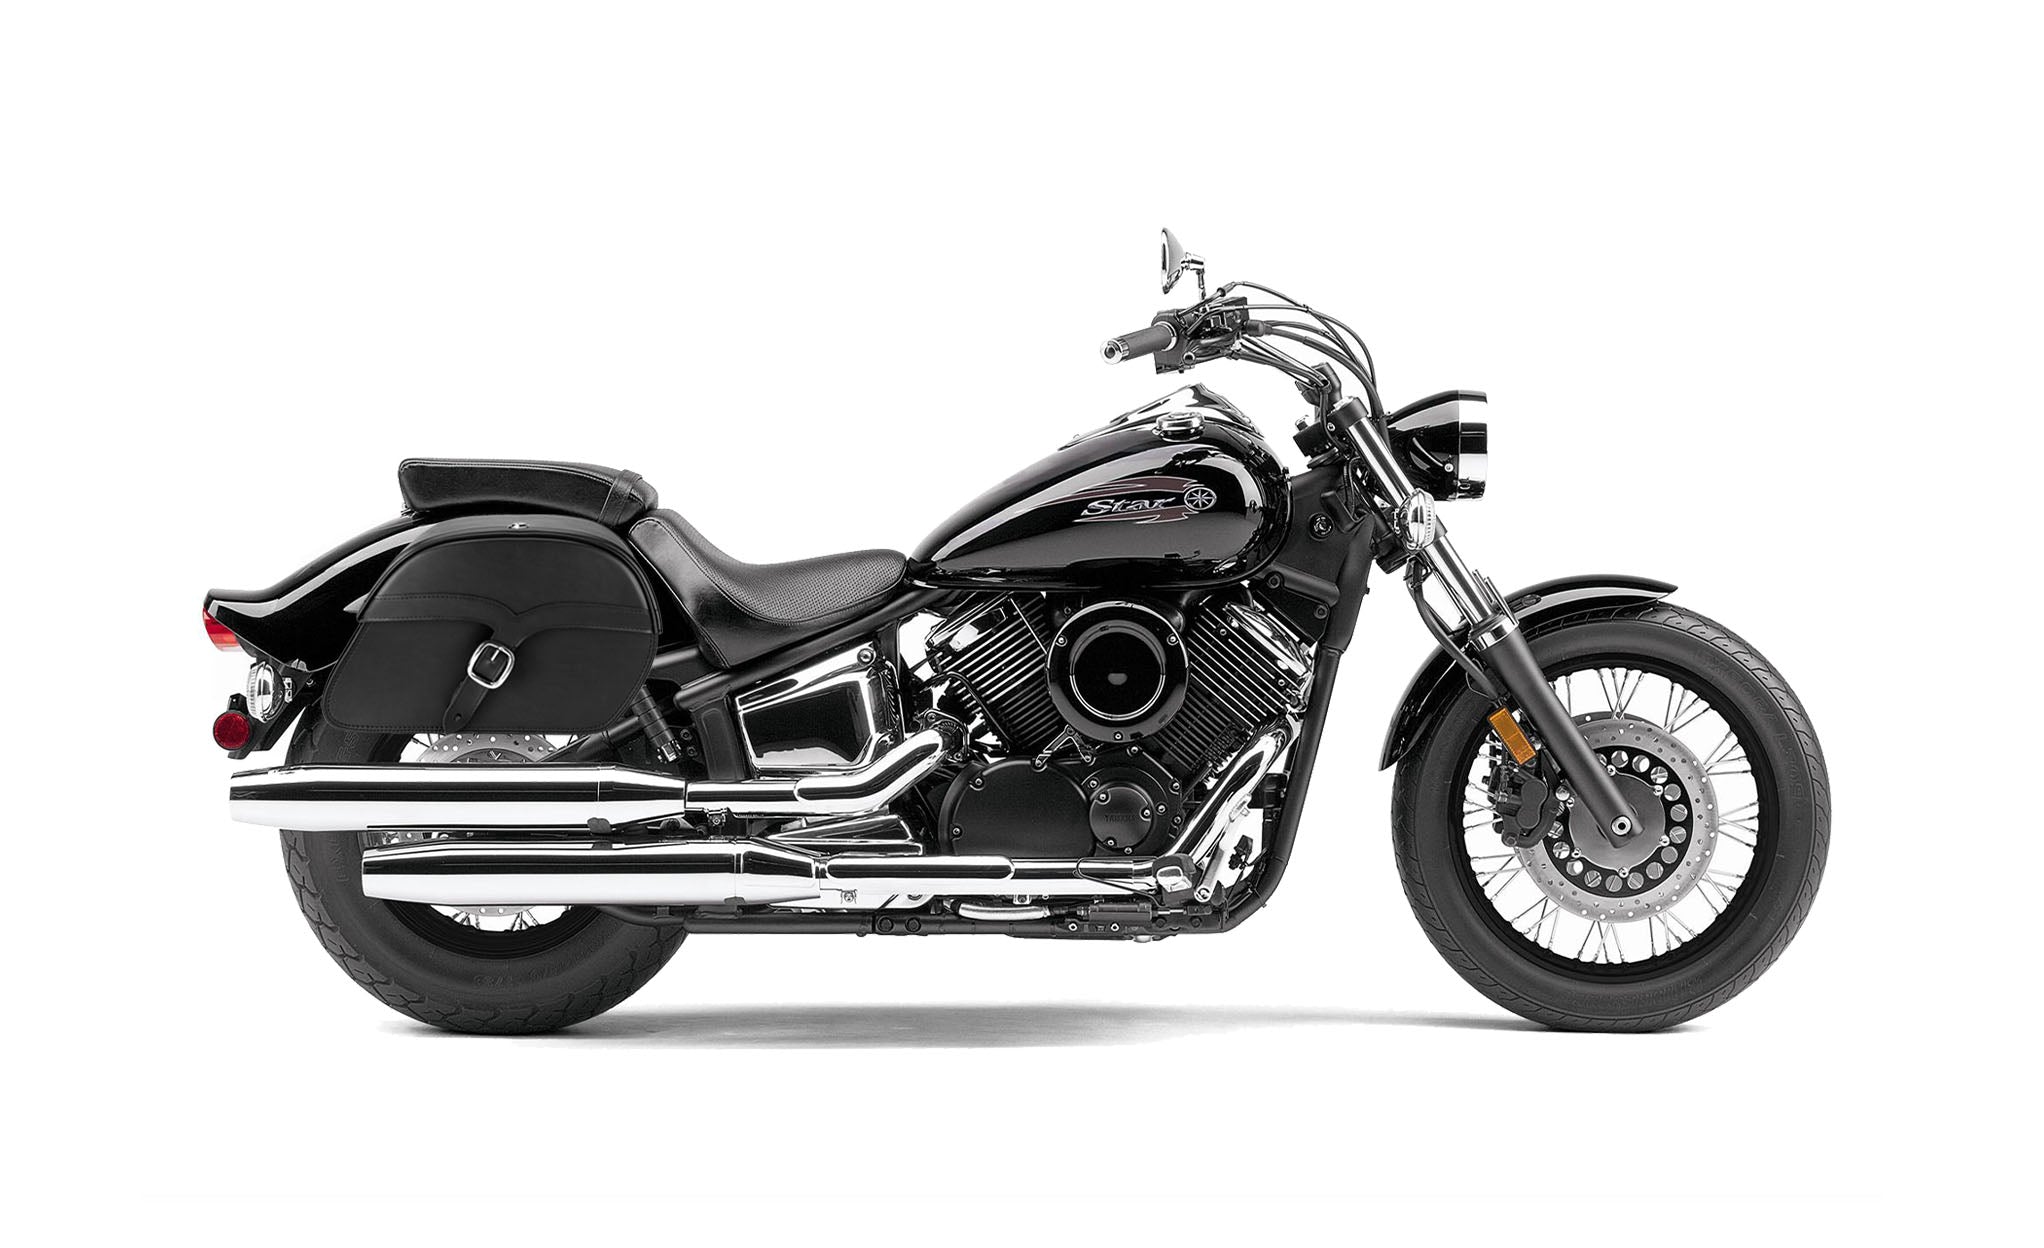 Viking Vintage Medium Yamaha V Star 1100 Custom Xvs11T Leather Motorcycle Saddlebags on Bike Photo @expand